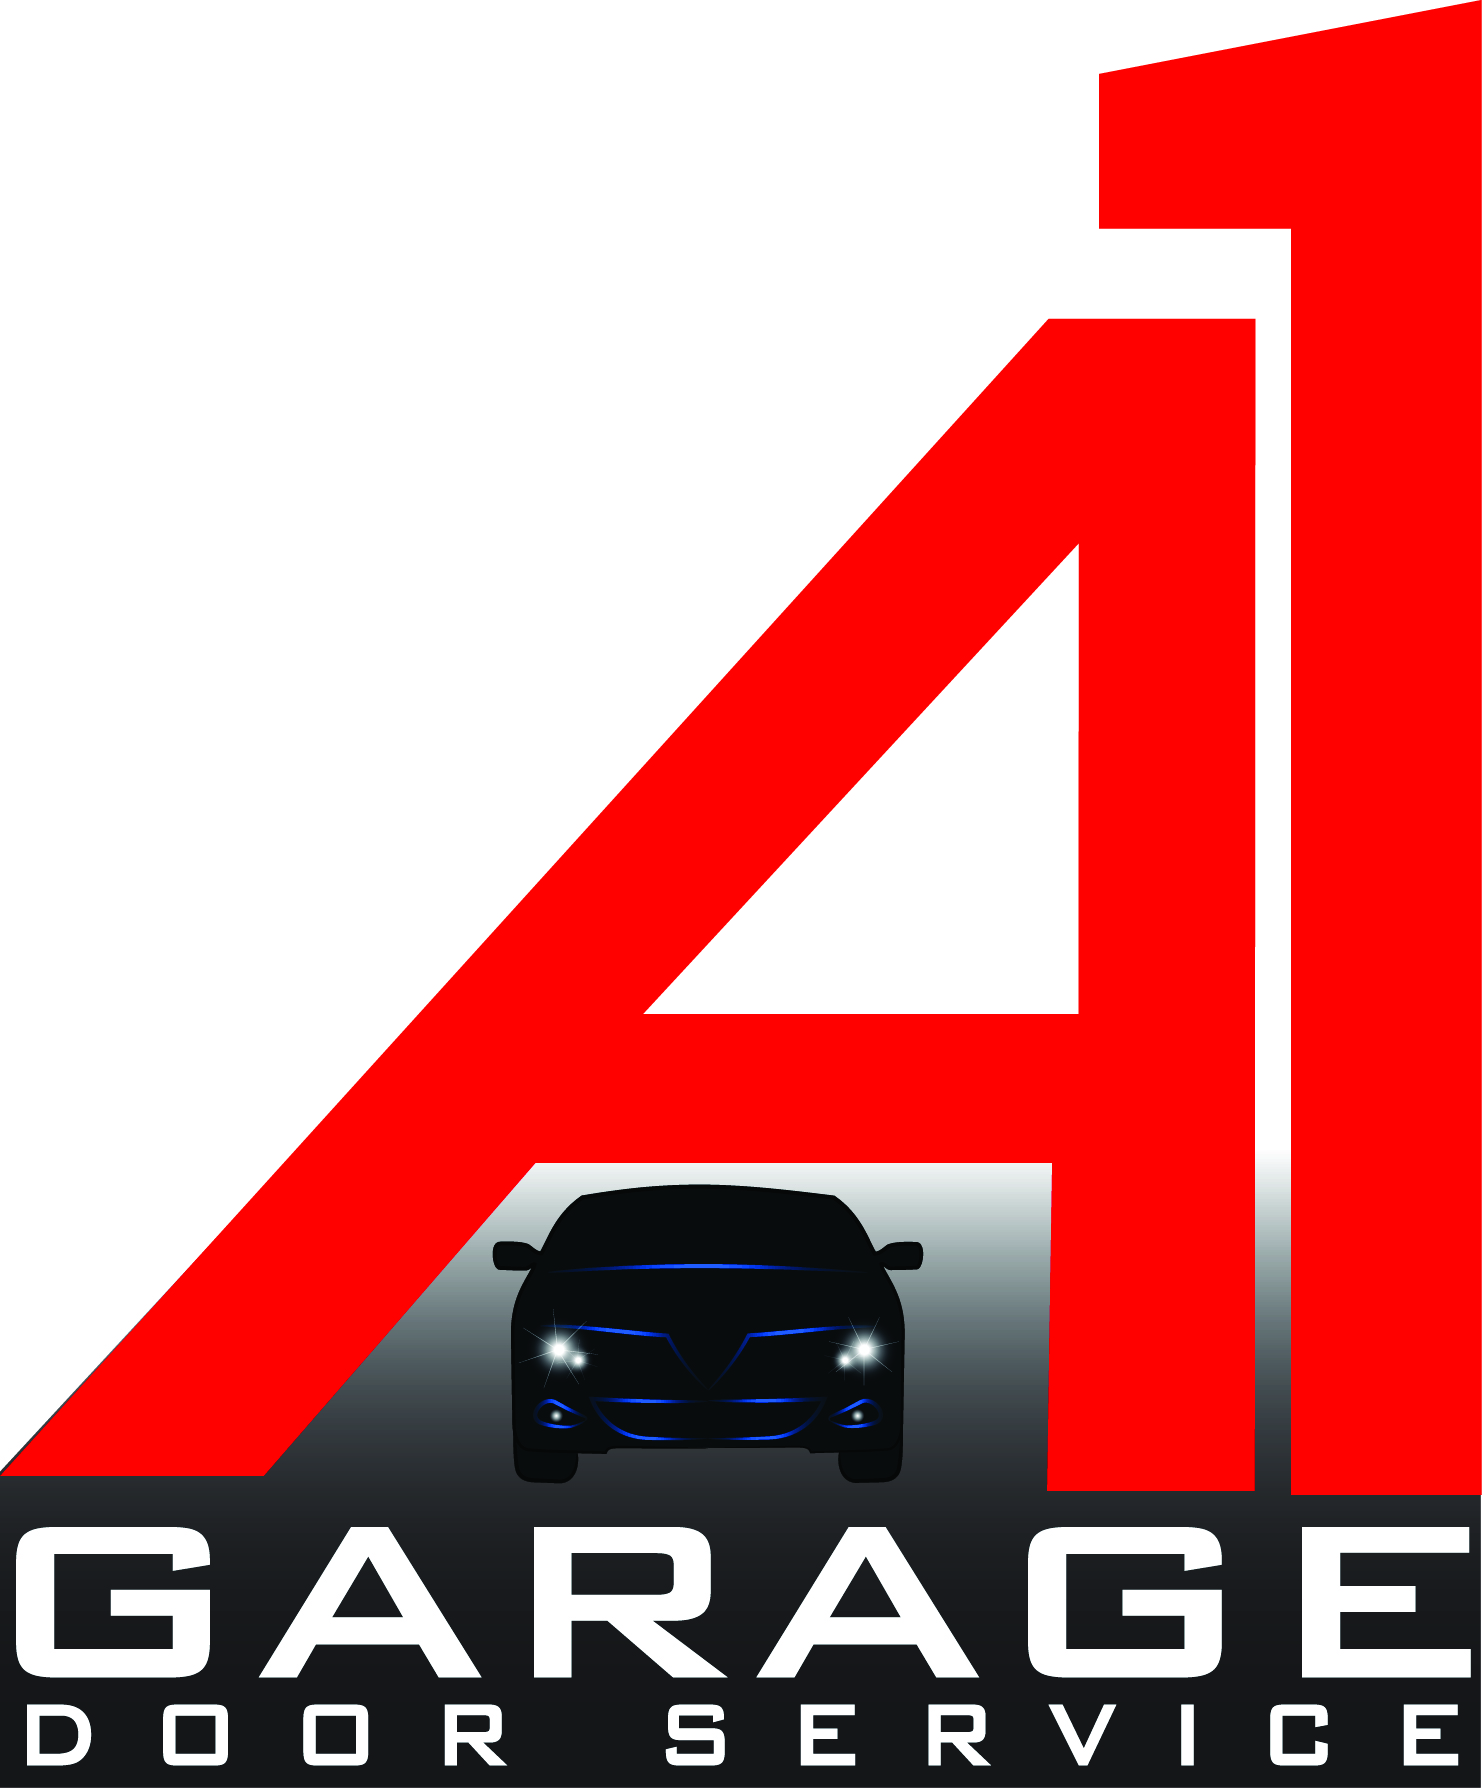 A1 Garage Door Service LLC - B26fe0eD BD90 418c 8597 E30c30e3b9eb